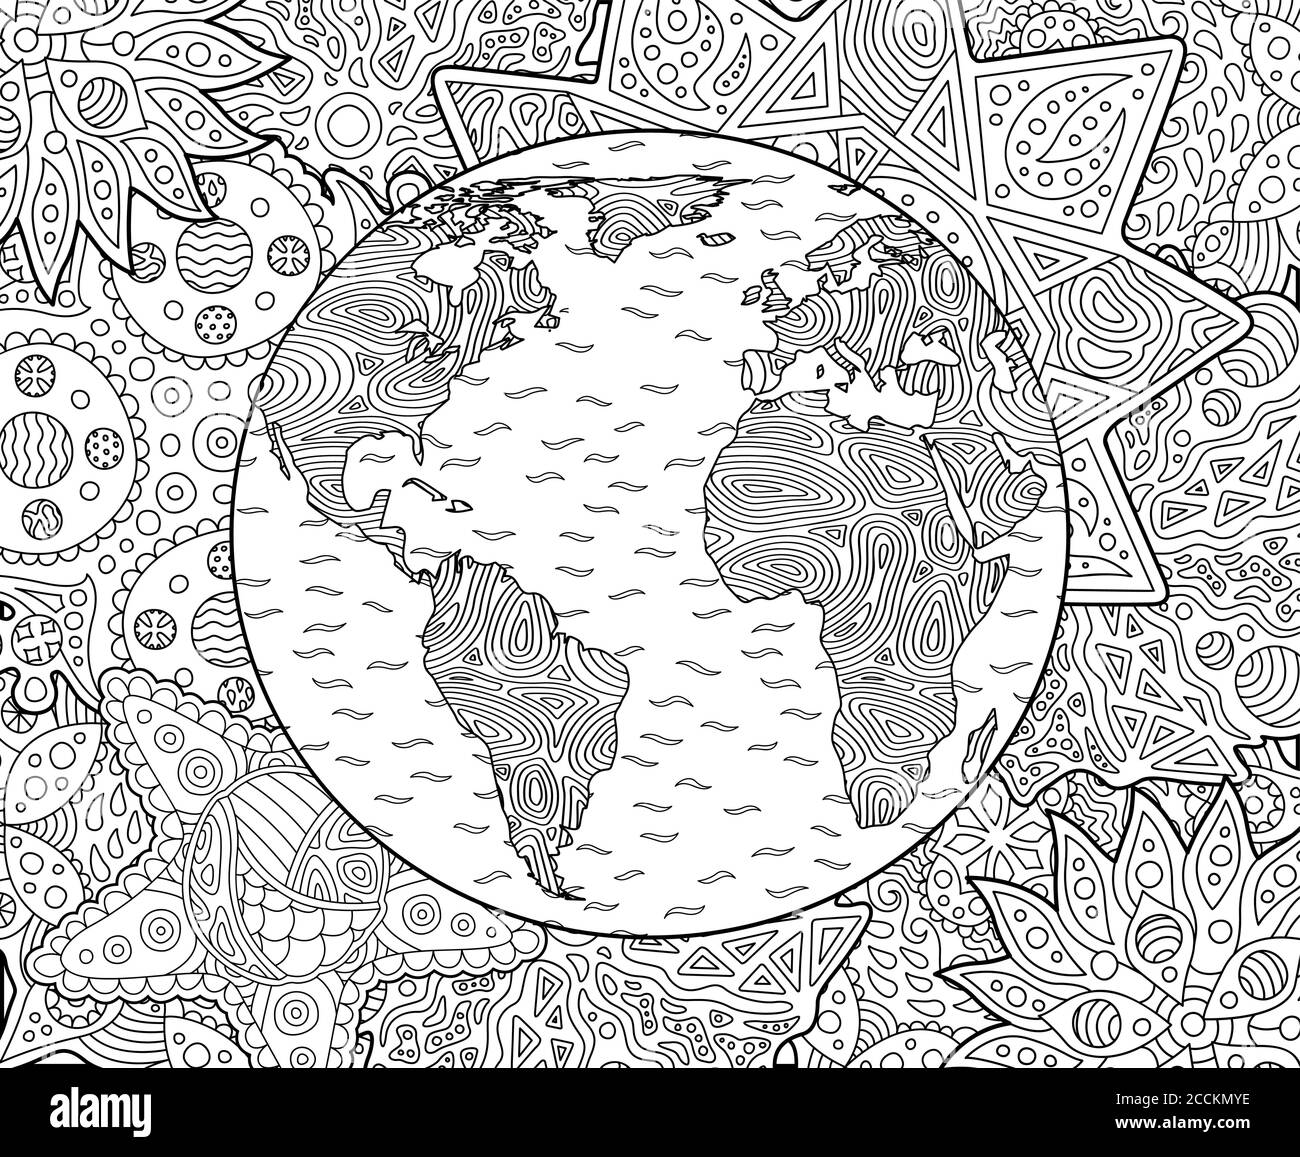 Belle page de livre de coloriage pour adultes avec la planète Terre stylisée Illustration de Vecteur